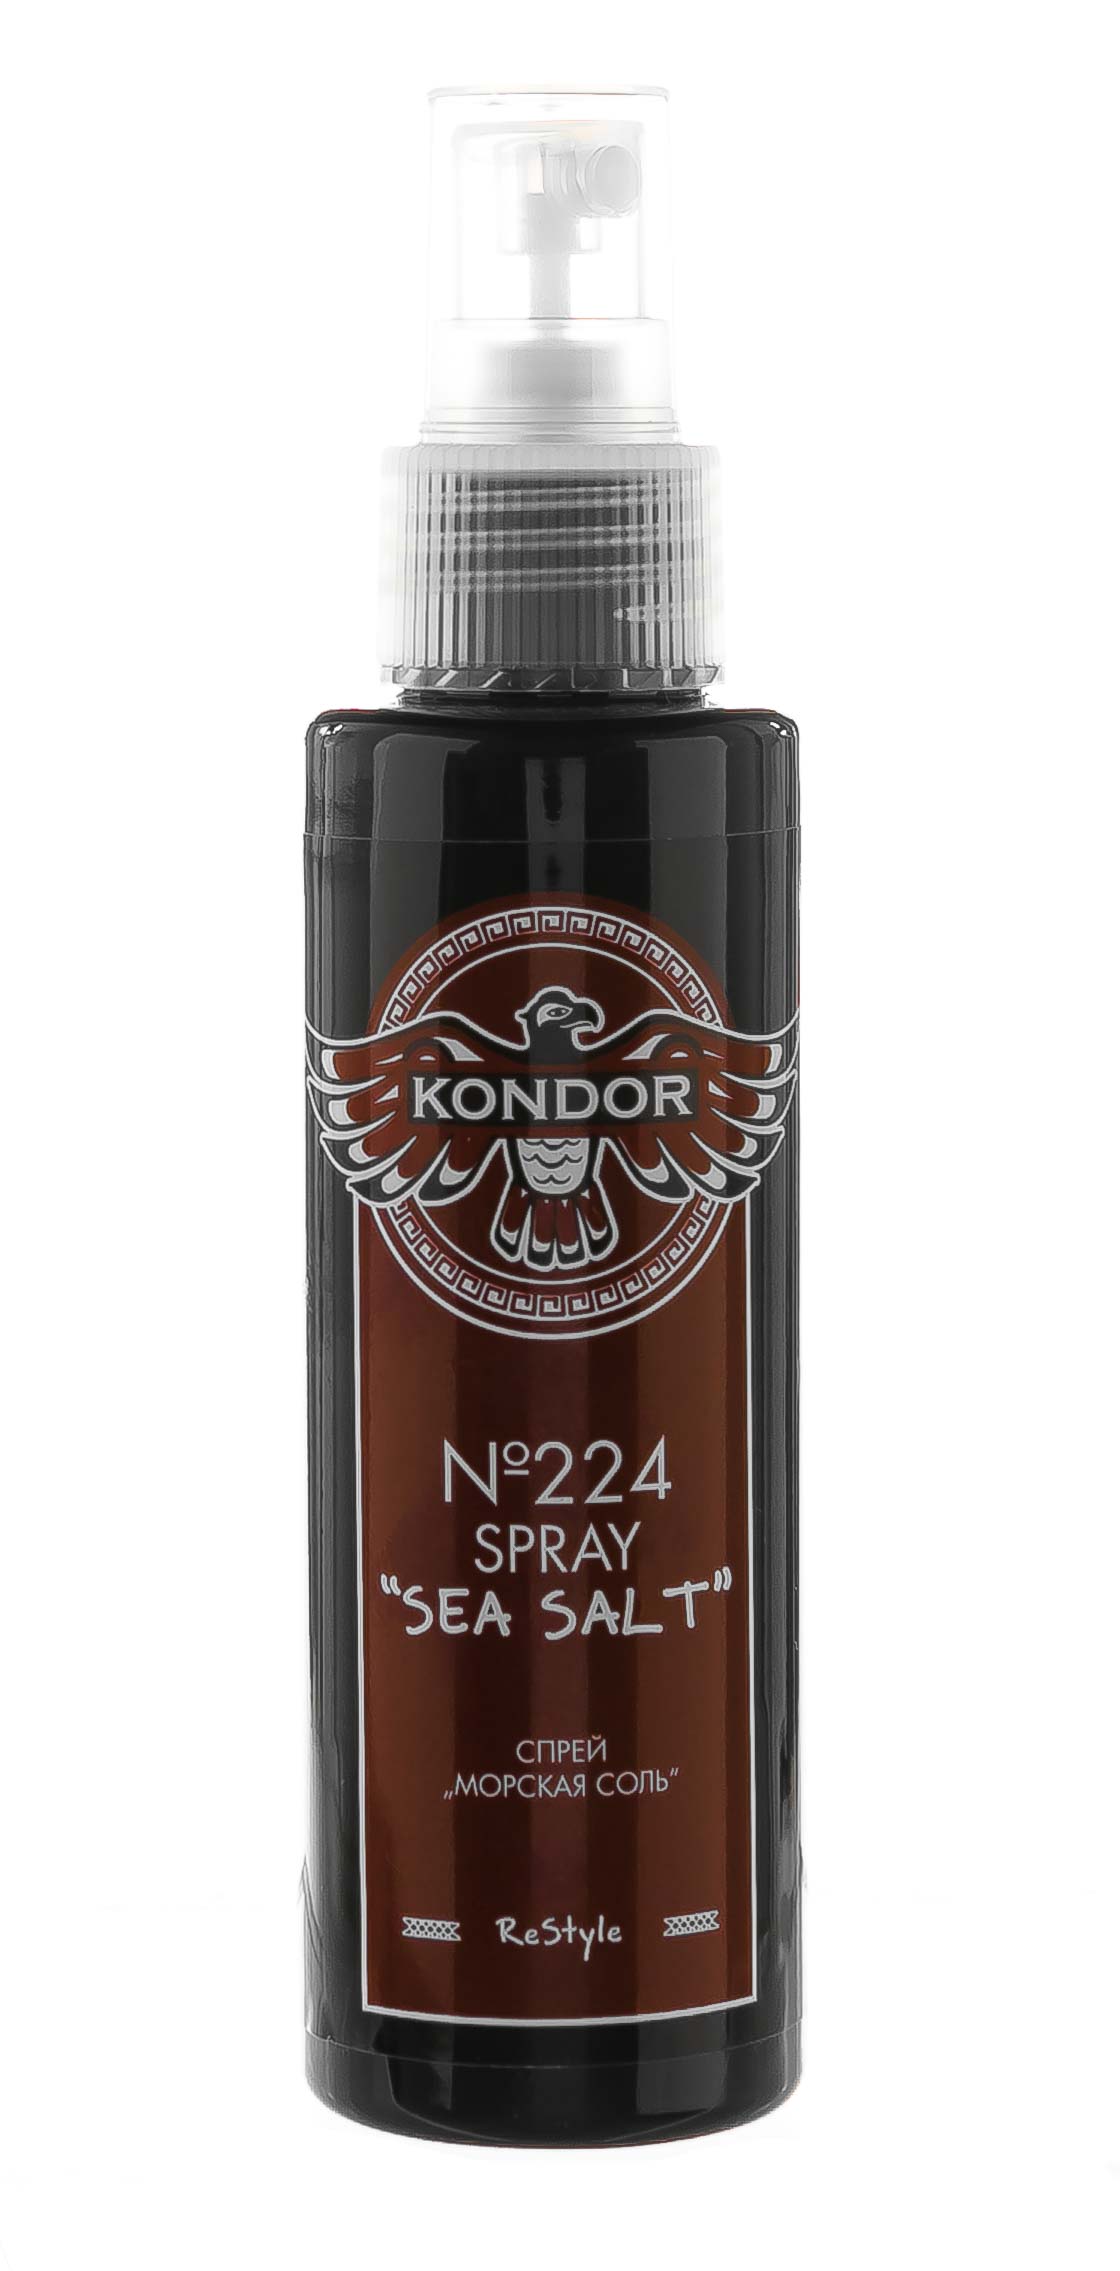 Kondor Спрей для укладки волос Морская соль 224 Sea Salt Spray, 100мл (Kondor, Re Style)